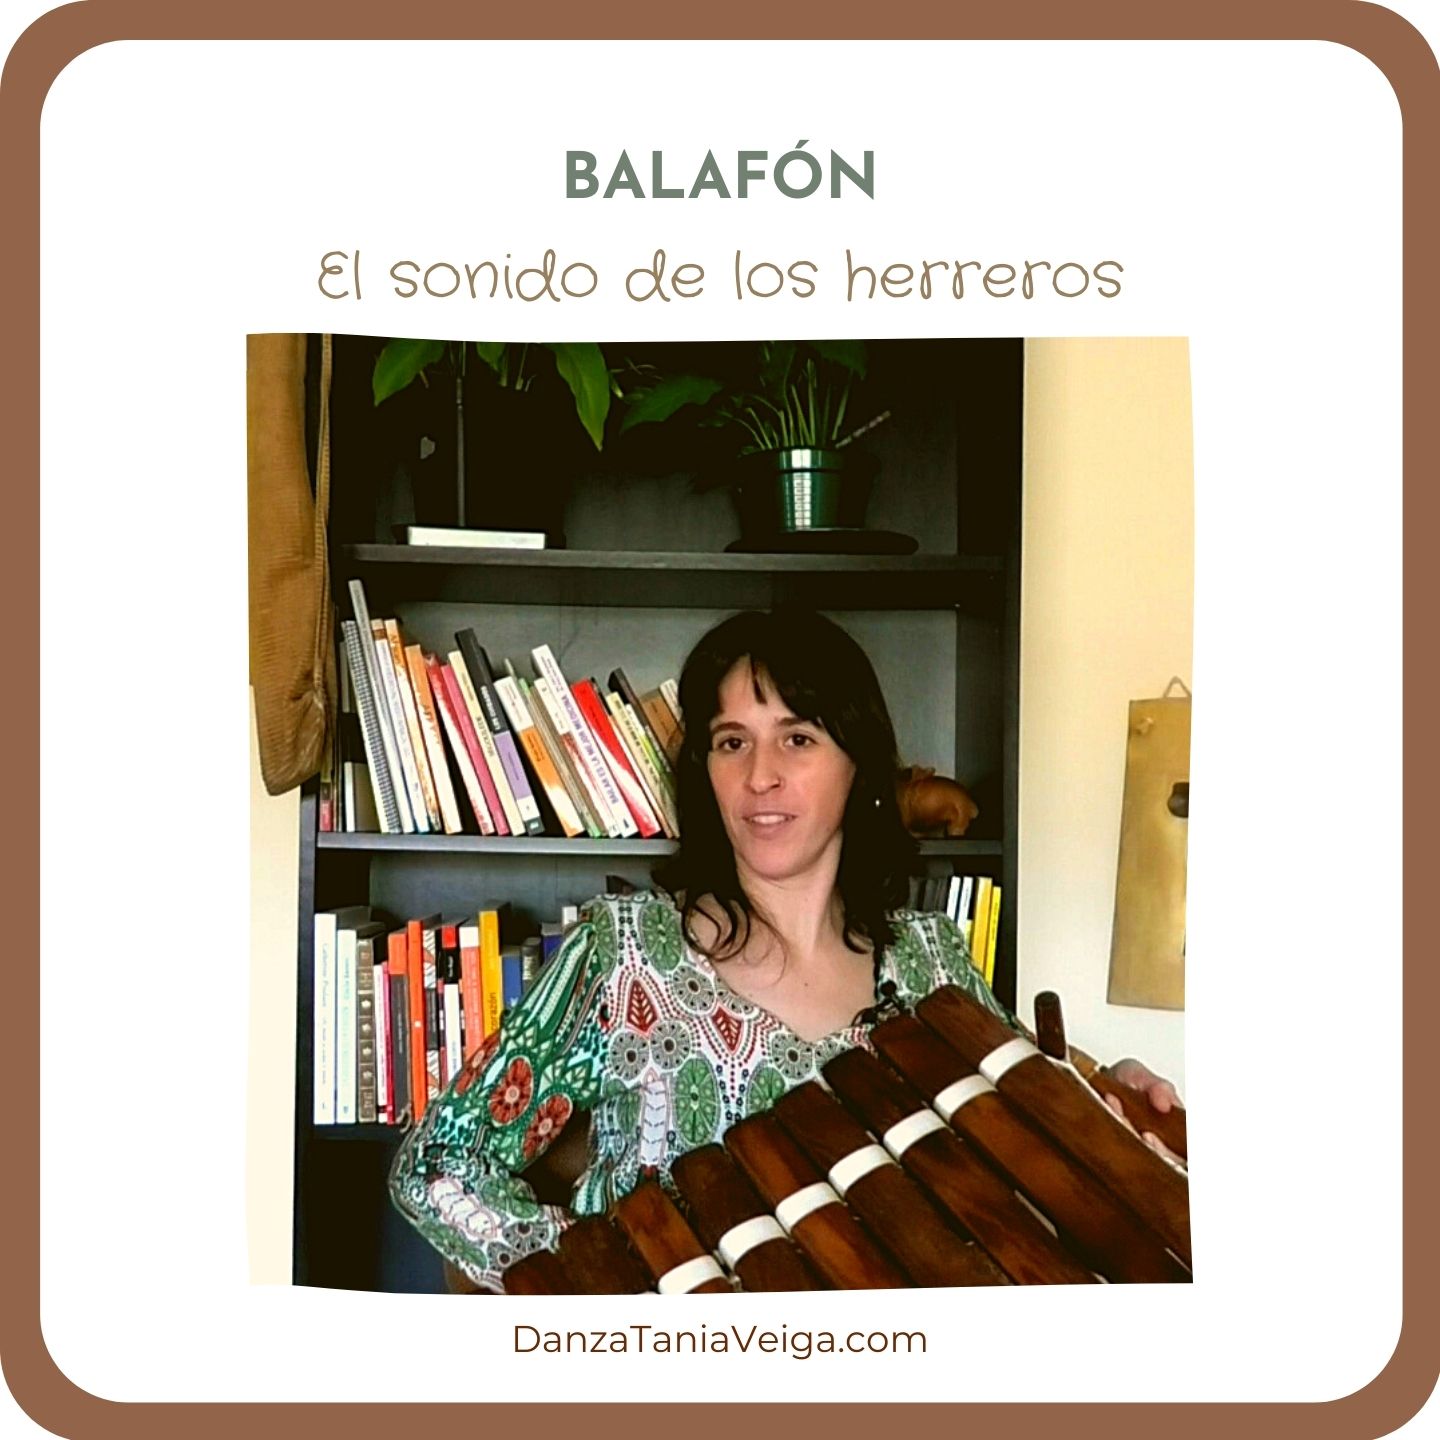 Balafón, instrumento de herreros